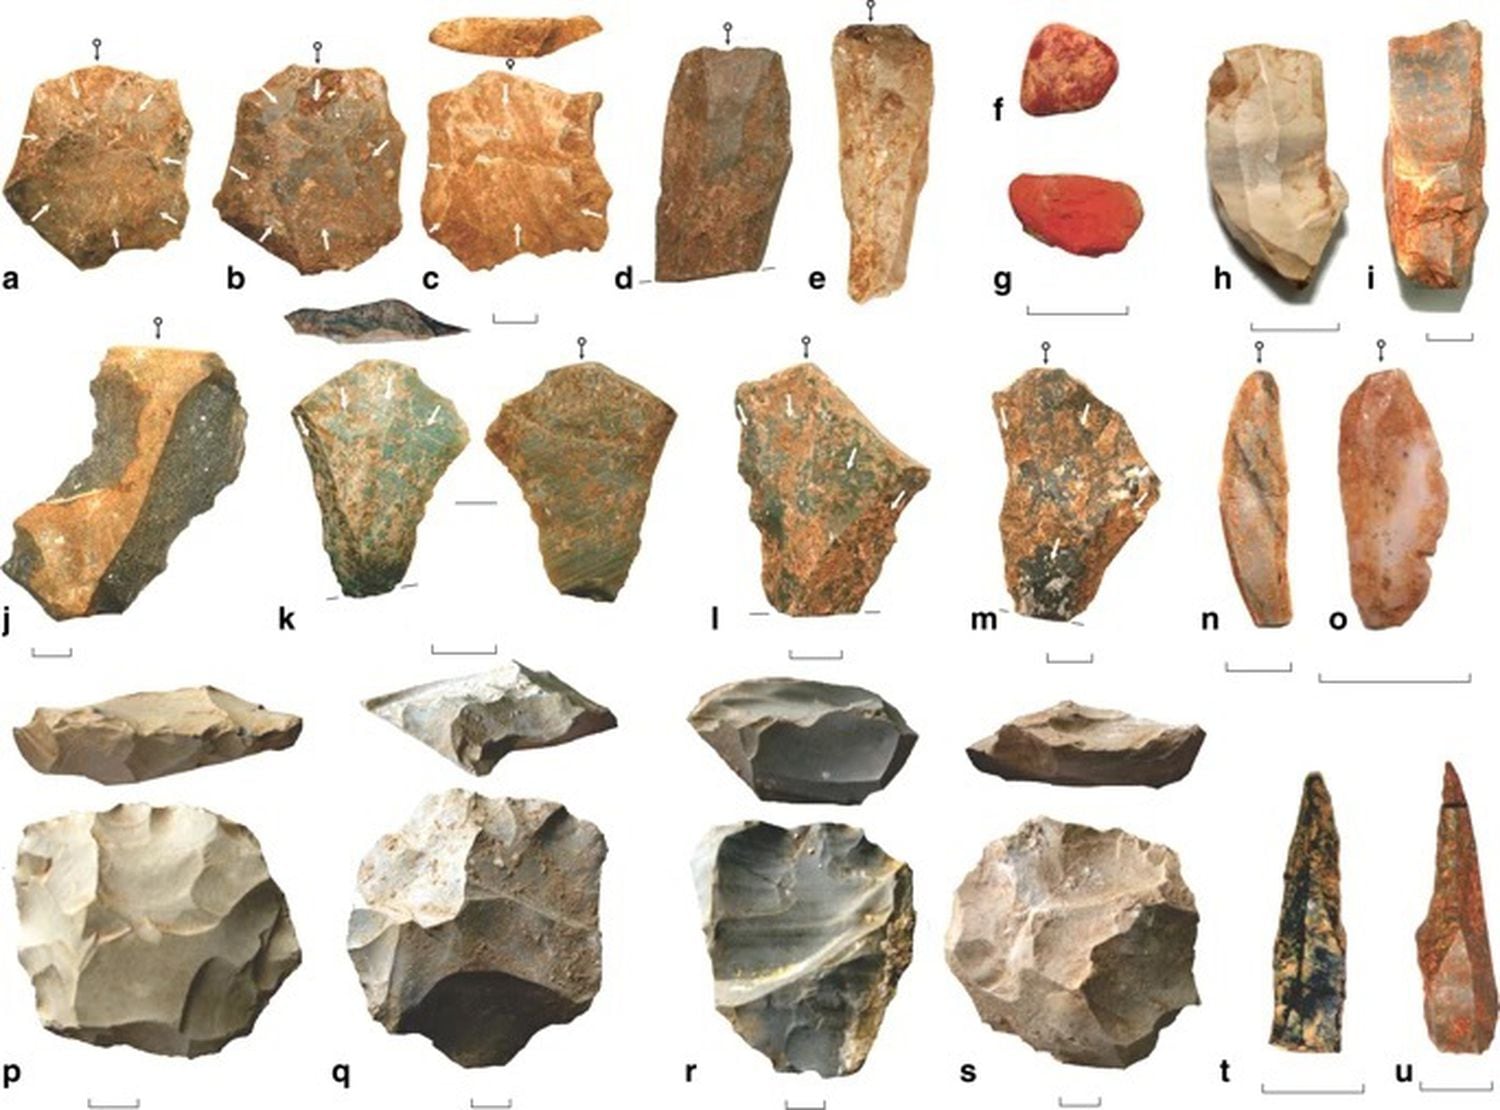 Herramientas de piedra del yacimiento de Dhaba, en la India, producidas en un periodo desde hace 80.000 años hasta hace 25.000